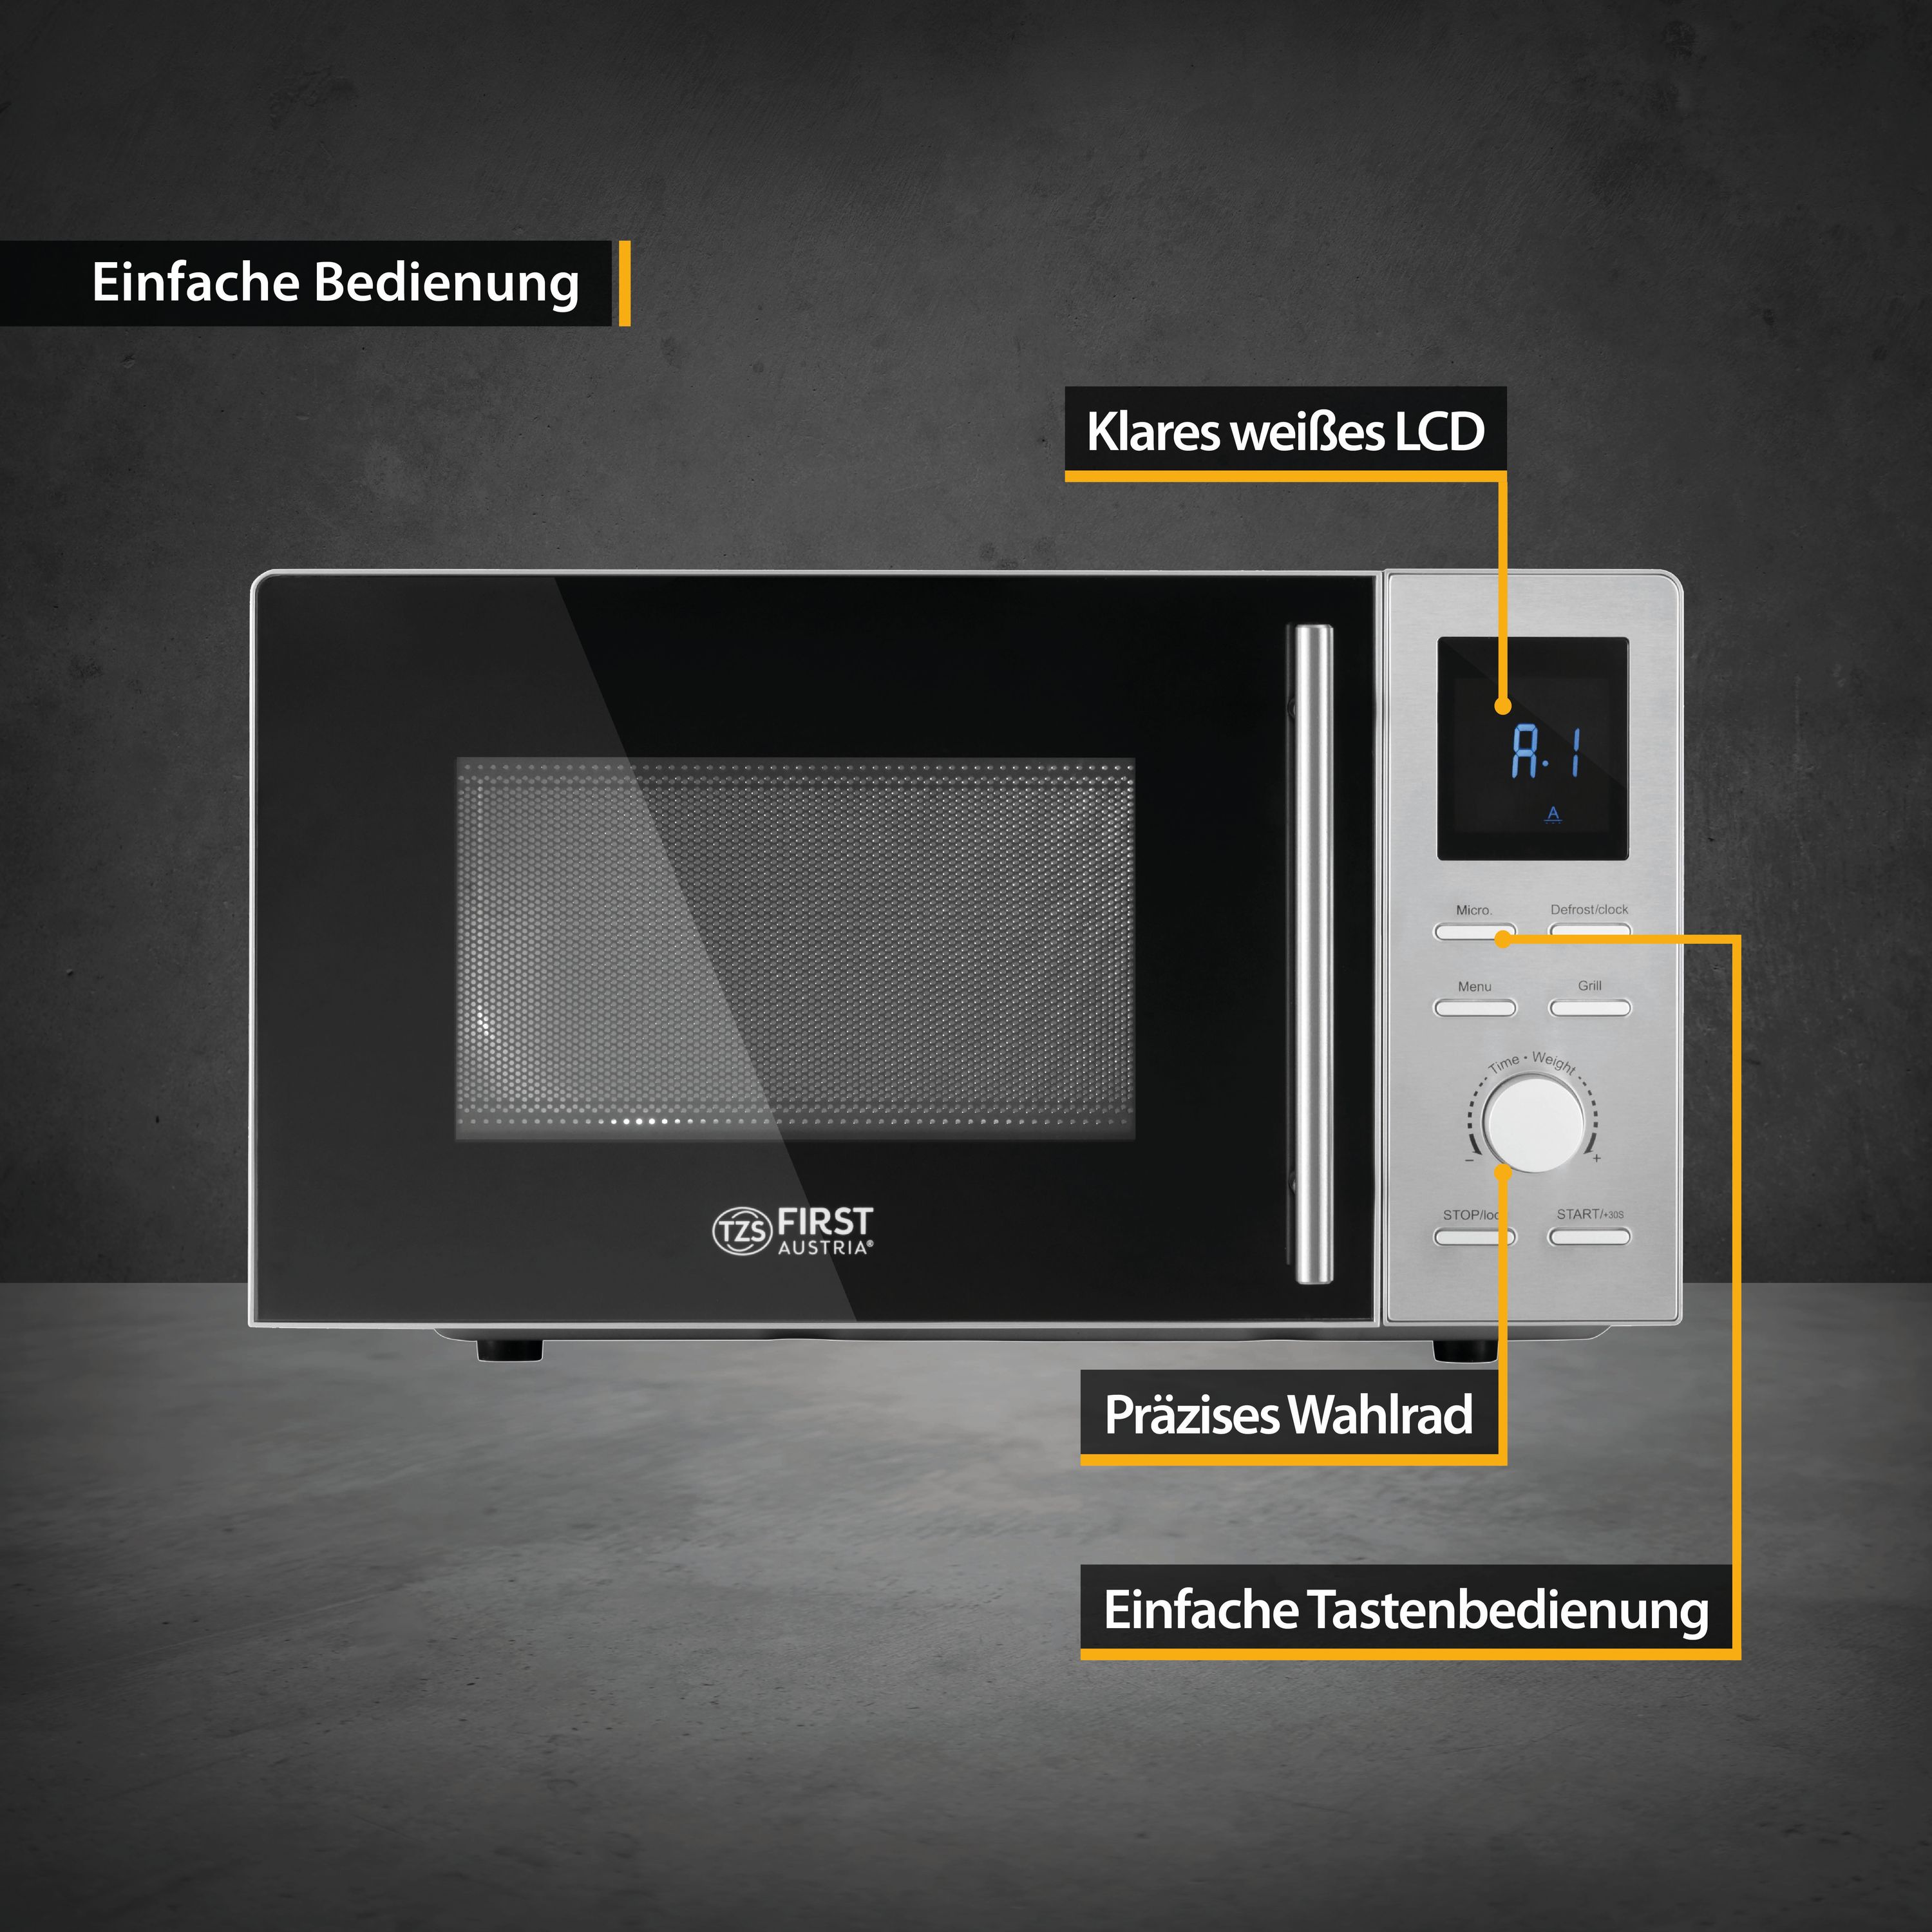 Microwave 20 liters | Digital: 700 watts | Grill: 900 watts